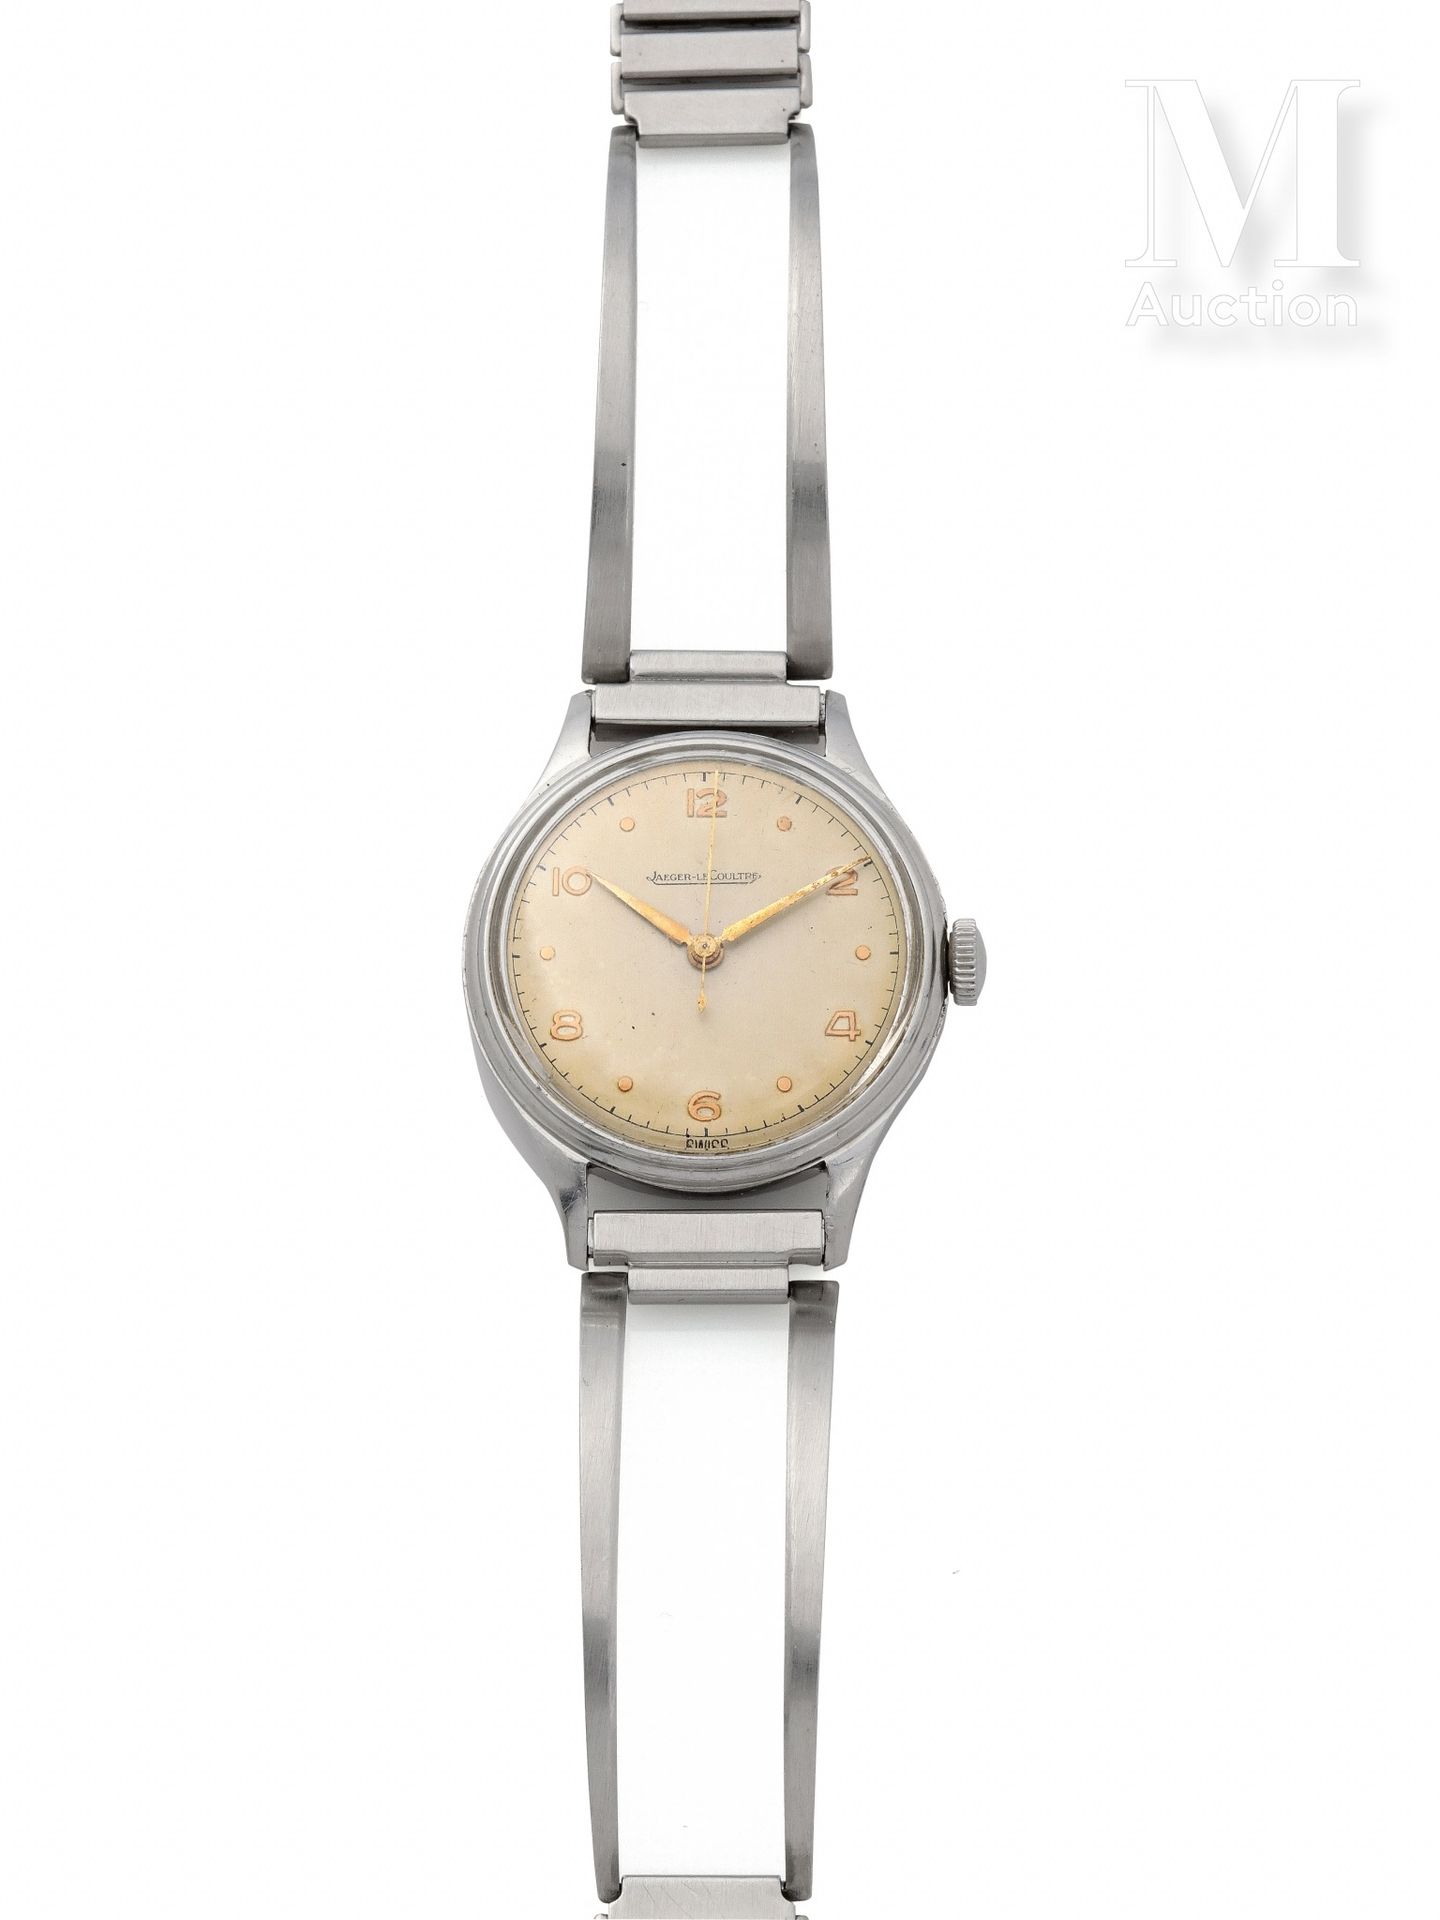 JAEGER-LECOULTRE Um 1960

Stahlgehäuse 

Mechanisches Uhrwerk mit Handaufzug 

K&hellip;